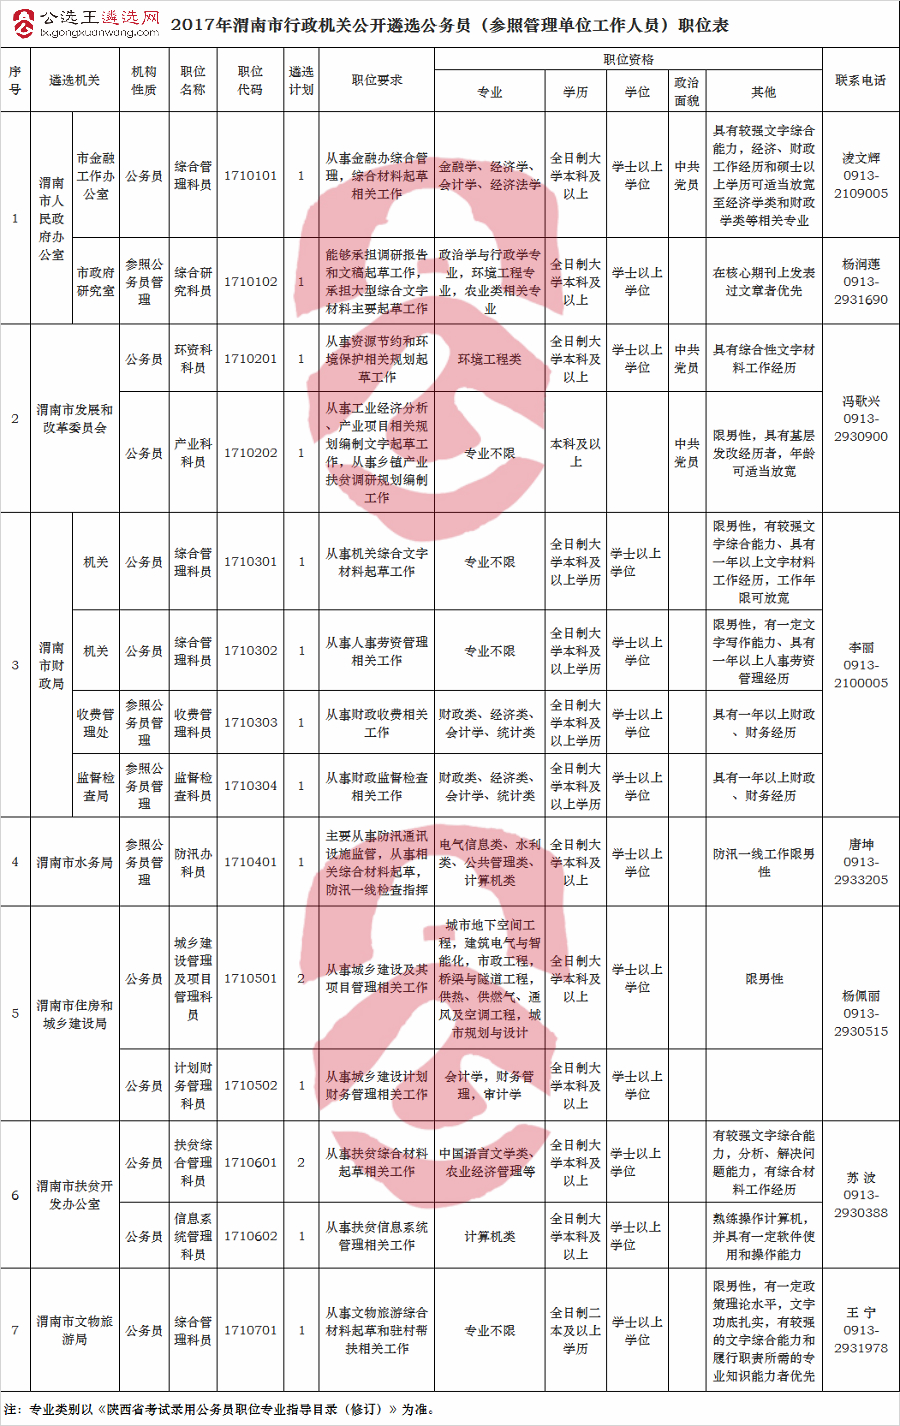 2017年渭南市行政机关公开遴选公务员（参照管理单位工作人员）职位表.jpg